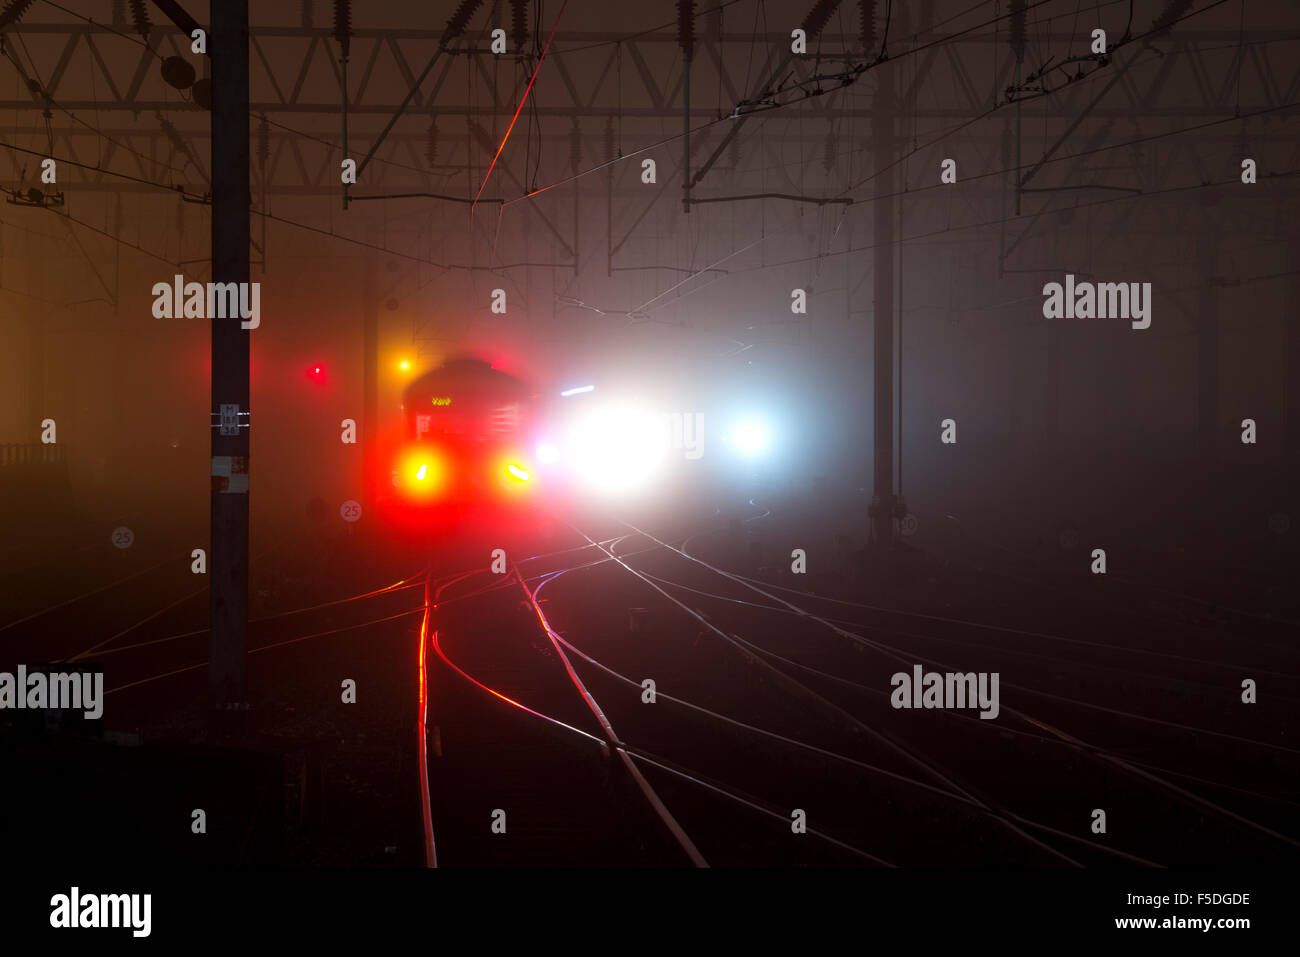 Manchester, UK. 2. November 2015. Züge ankommen und abfahren am Bahnhof Manchester Piccadilly im dichten Nebel in einer dunklen Nacht Credit: Russell Hart/Alamy Live News. Stockfoto